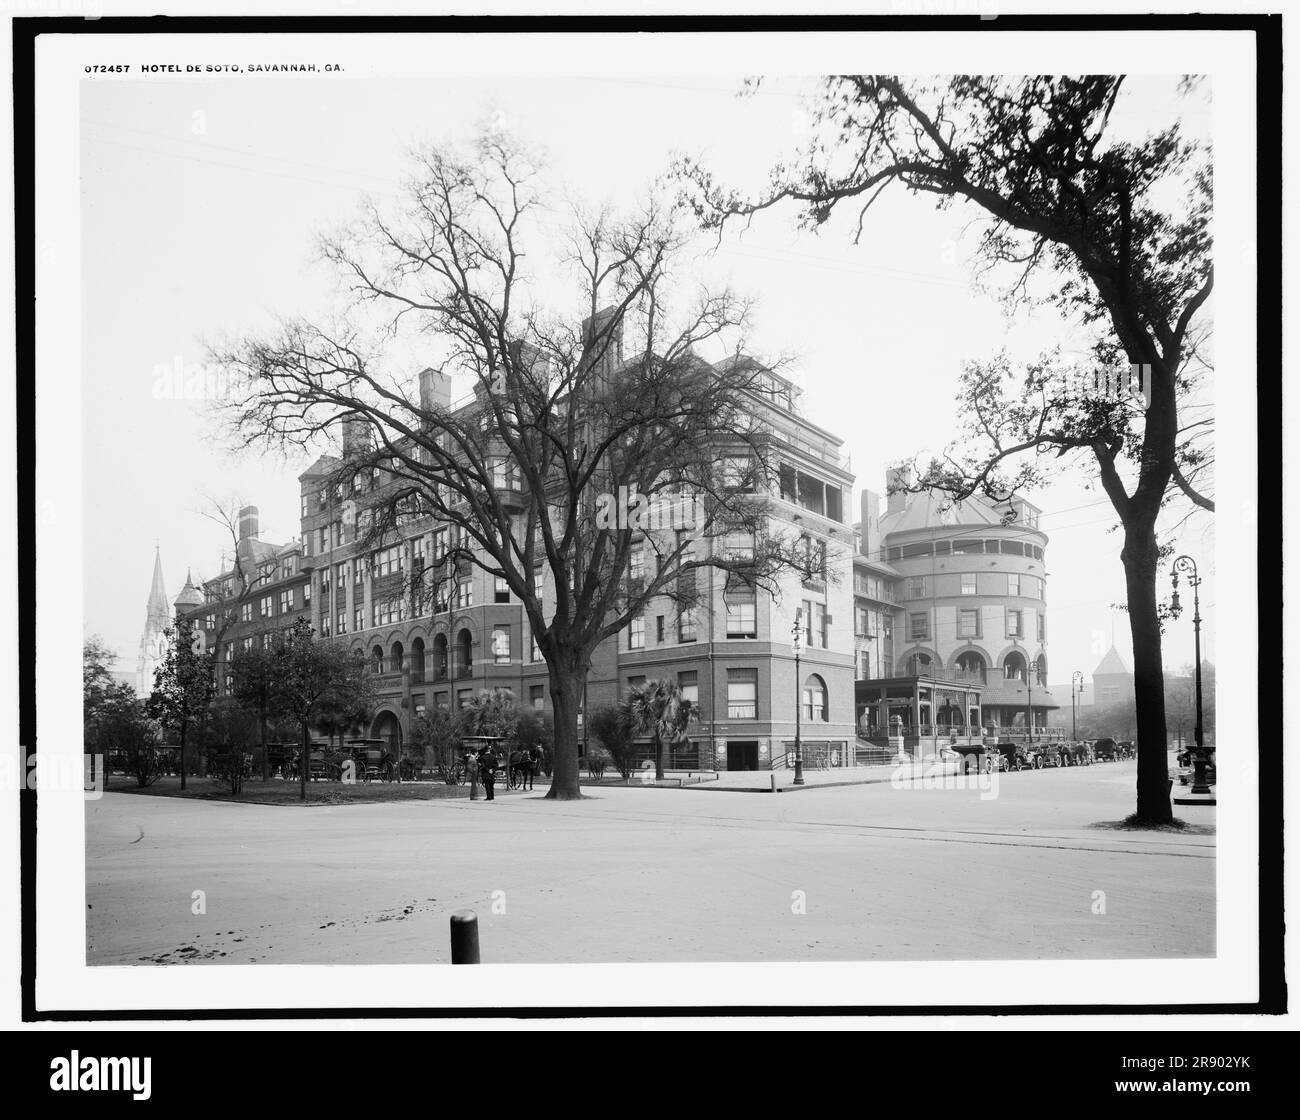 Hotel de Soto, Savannah, Géorgie, entre 1910 et 1920. Conçu par William G. Preston et construit en 1890. Notez les wagons qui attendent à gauche et l'officier de la ligne de la côte Atlantique au centre. Banque D'Images